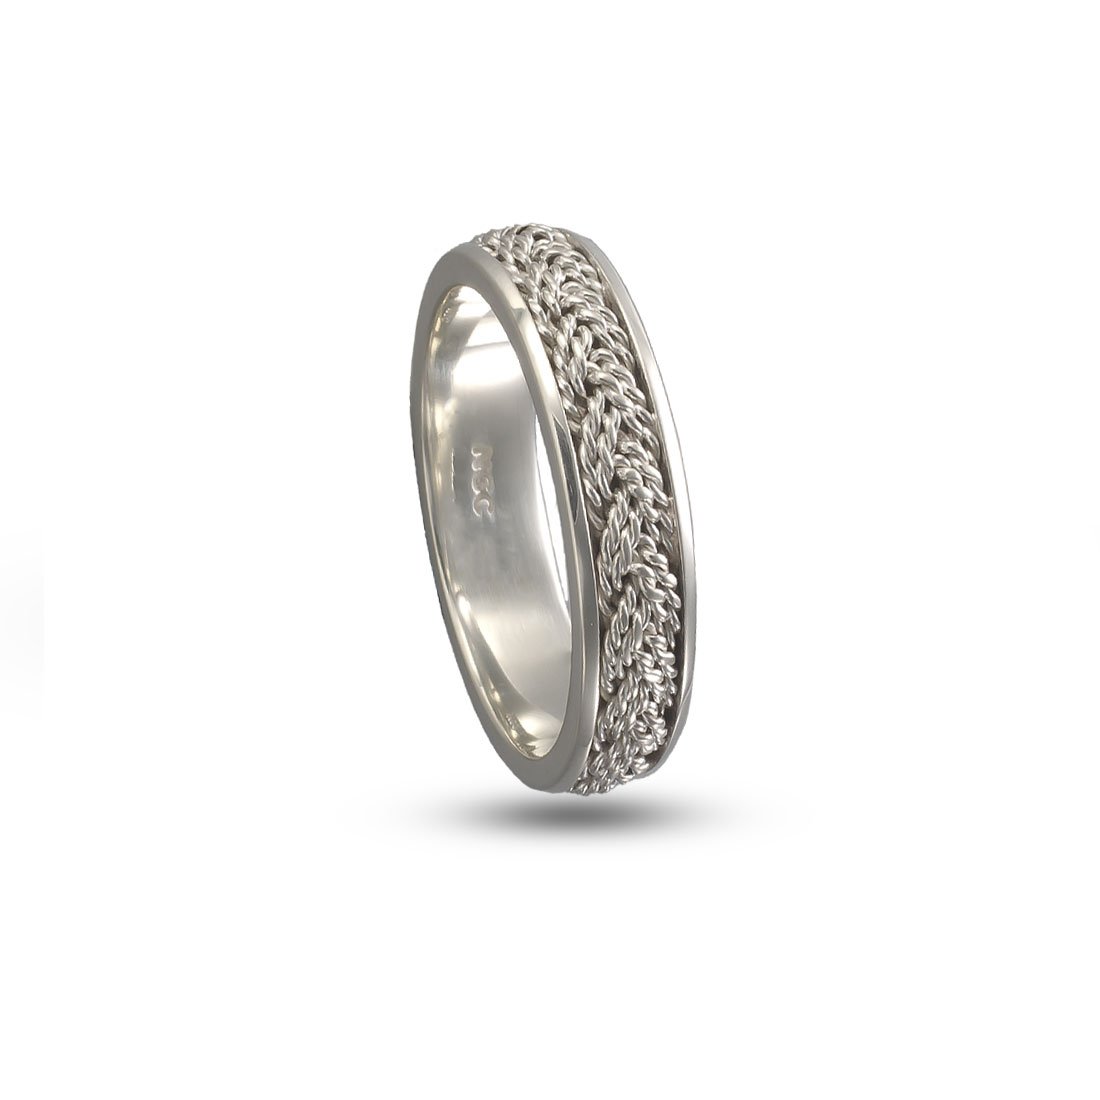 Wide Turks Head Ring Sterling Silver - Ocean Inspired Wedding Rings